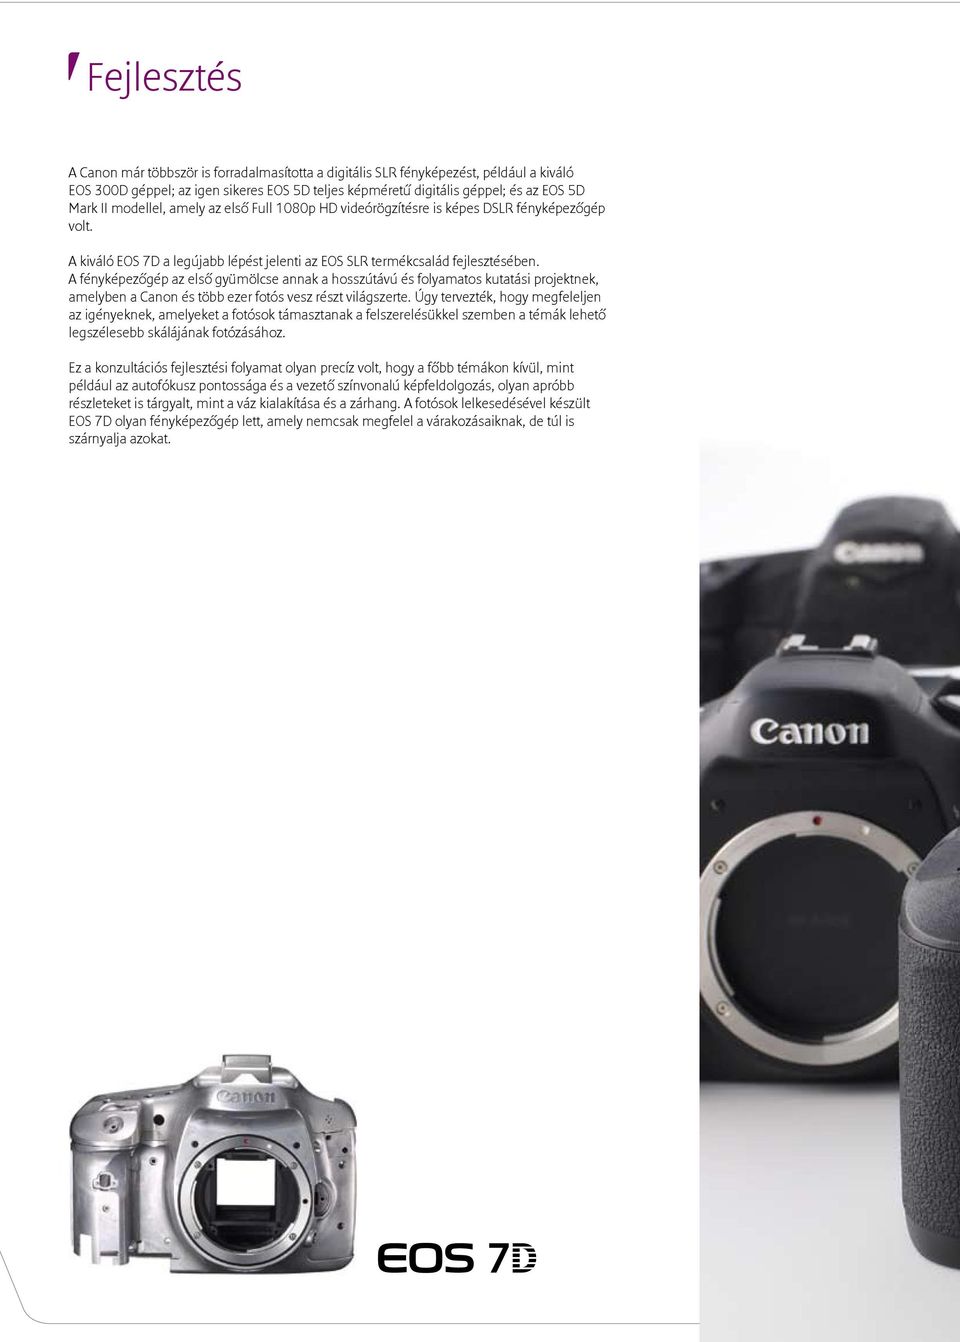 A fényképezőgép az első gyümölcse annak a hosszútávú és folyamatos kutatási projektnek, amelyben a Canon és több ezer fotós vesz részt világszerte.